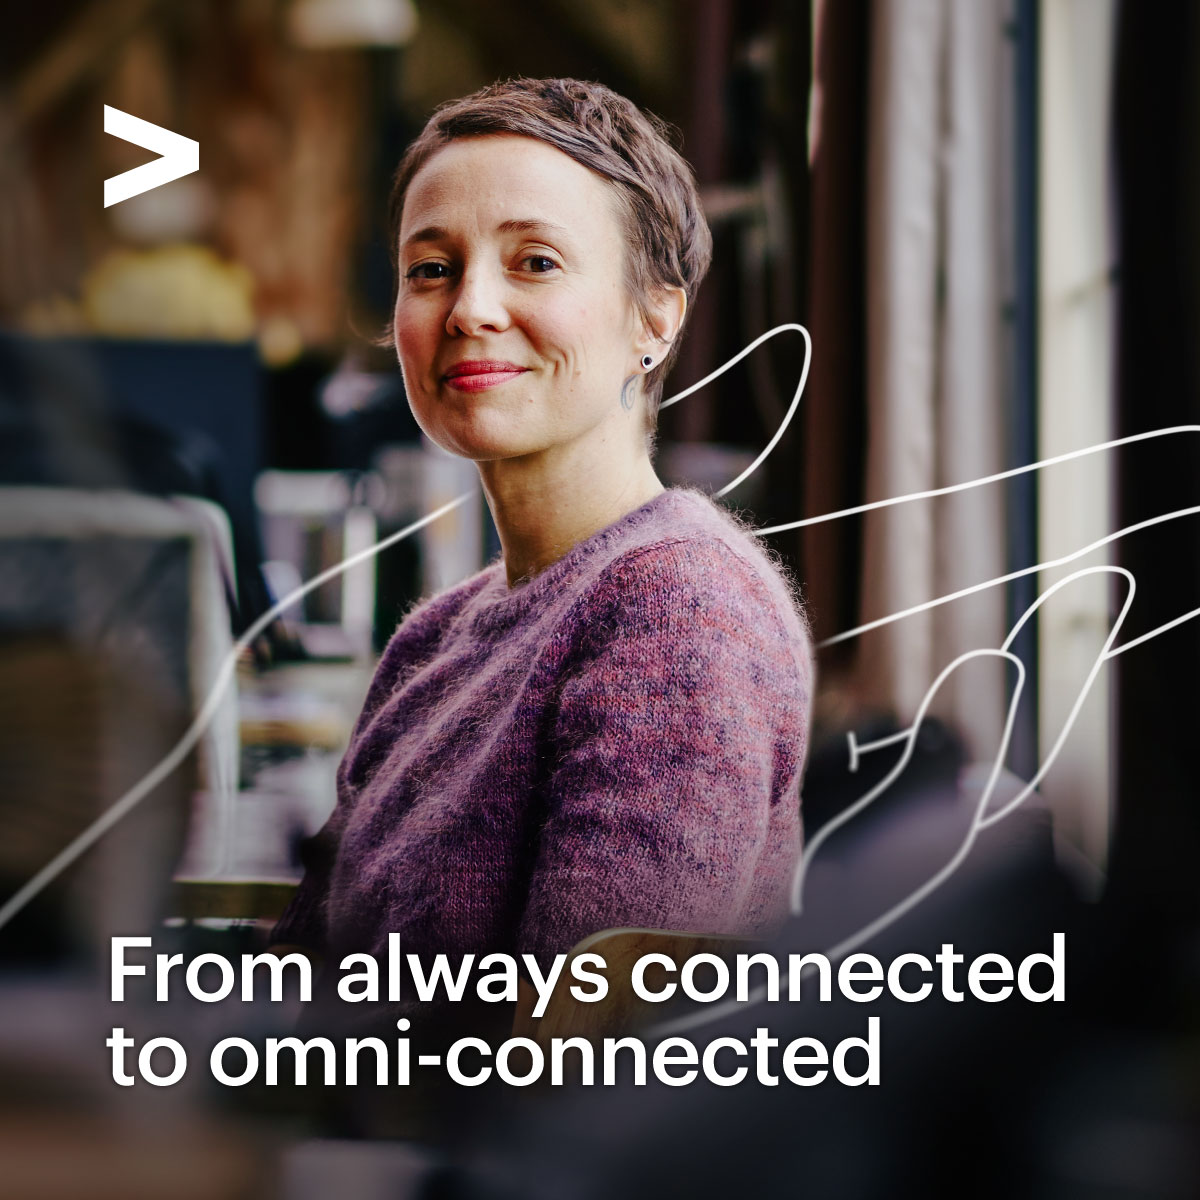 Mit #Omni-Connetion können Unternehmen wachsen und gleichzeitig schaffen wir gleiche Bedingungen und Erlebnisse für alle. Wie können wir das volle Potenzial unserer Mitarbeiter am Arbeitsplatz freisetzen? Jetzt mehr erfahren: accntu.re/3yTfI6q #omniconnected #employee